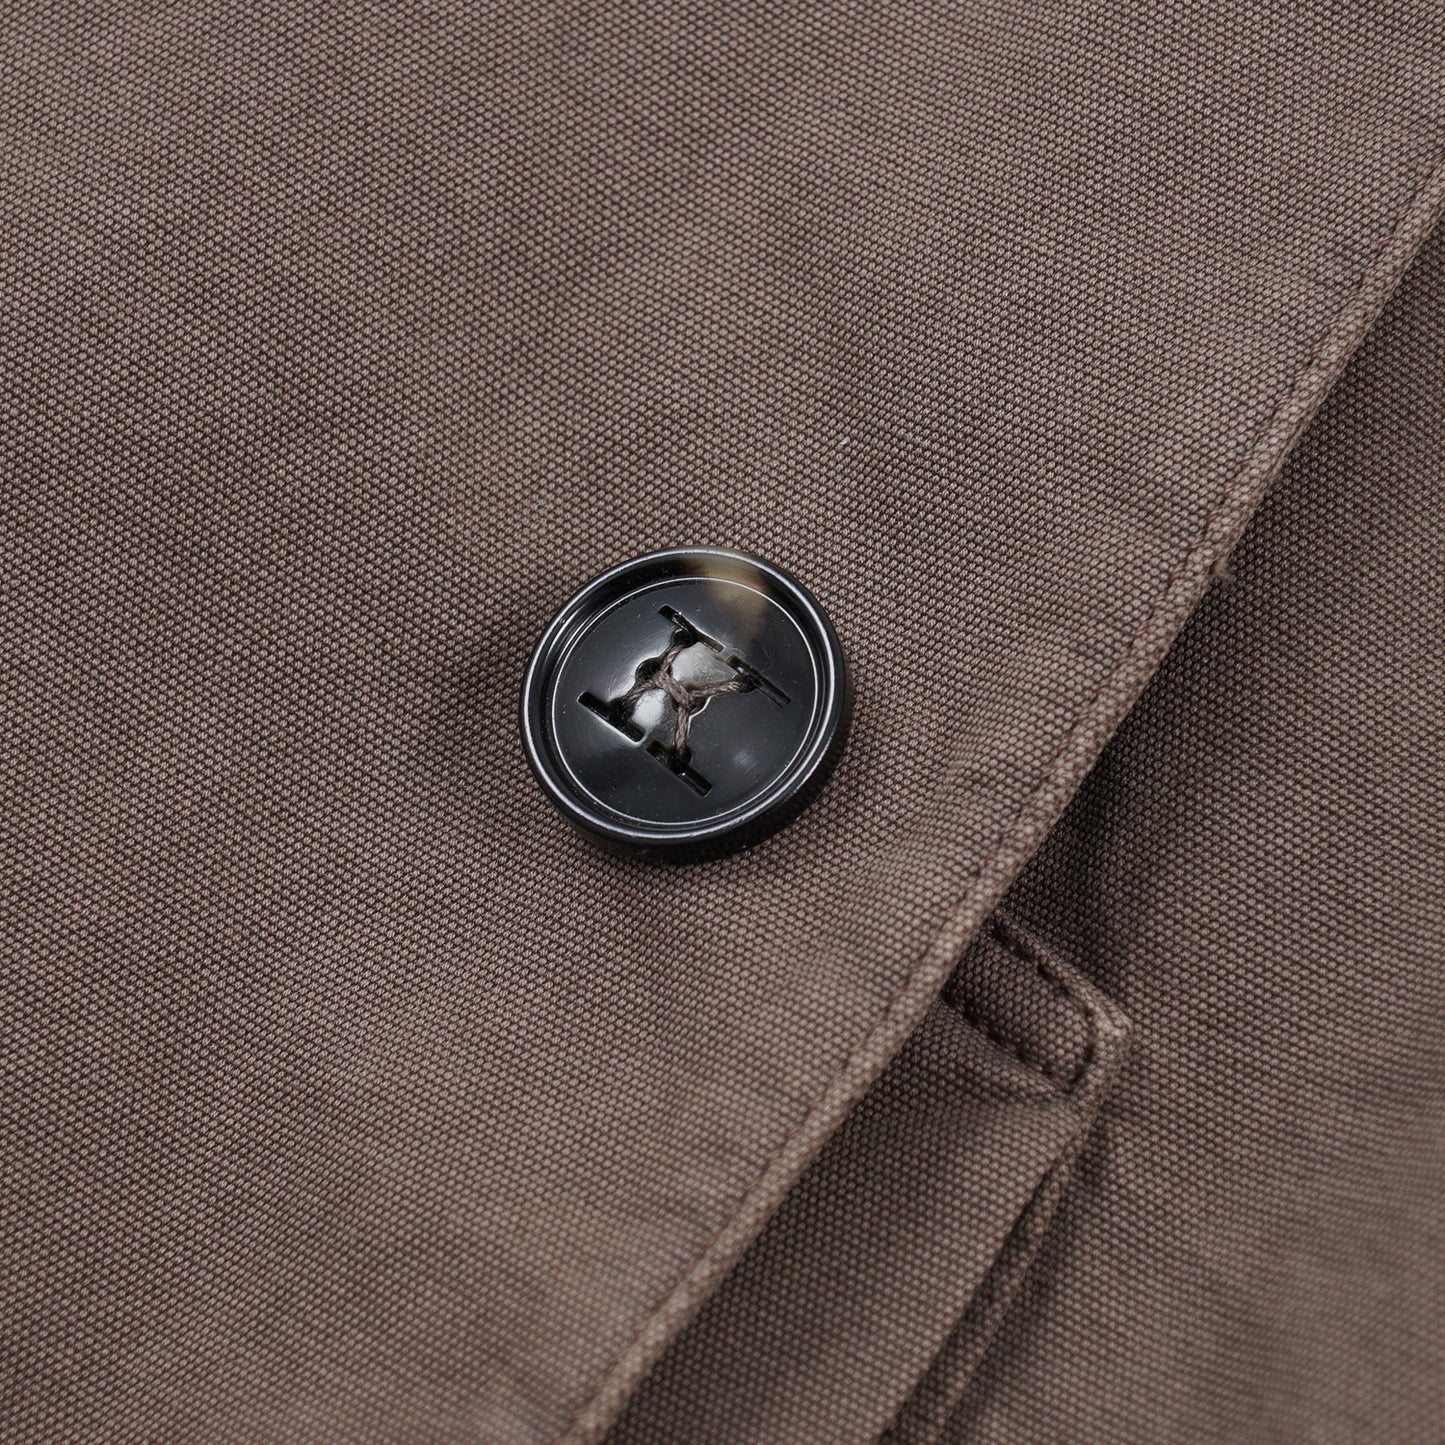 Kiton Field Blazer with Leather Trim - Top Shelf Apparel